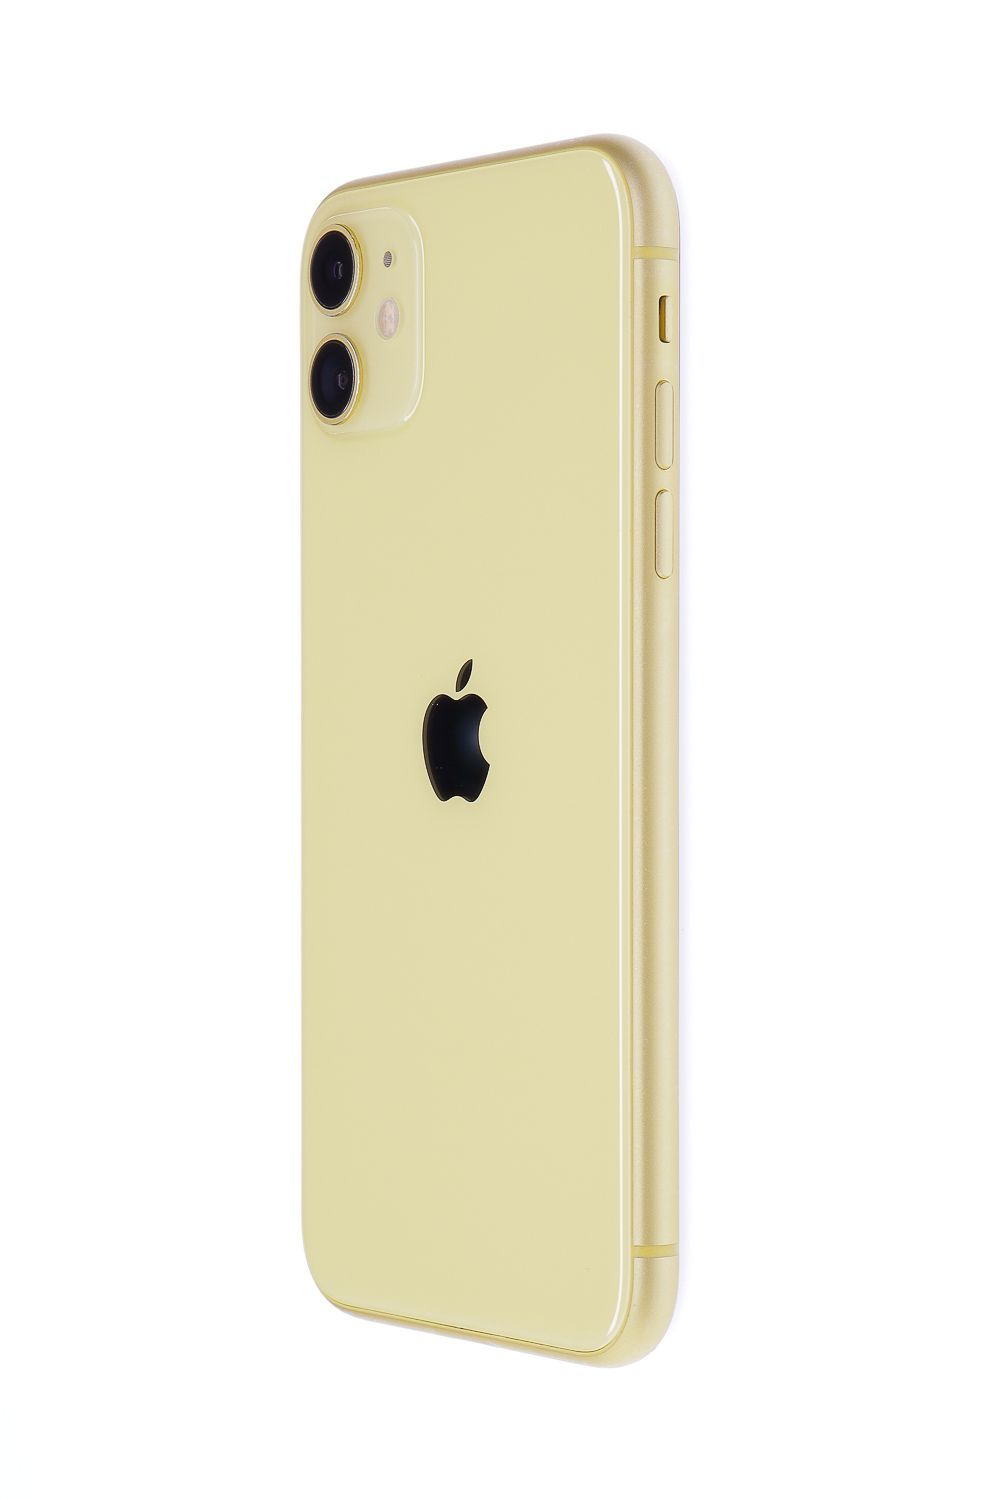 Mobiltelefon Apple iPhone 11, Yellow, 128 GB, Foarte Bun